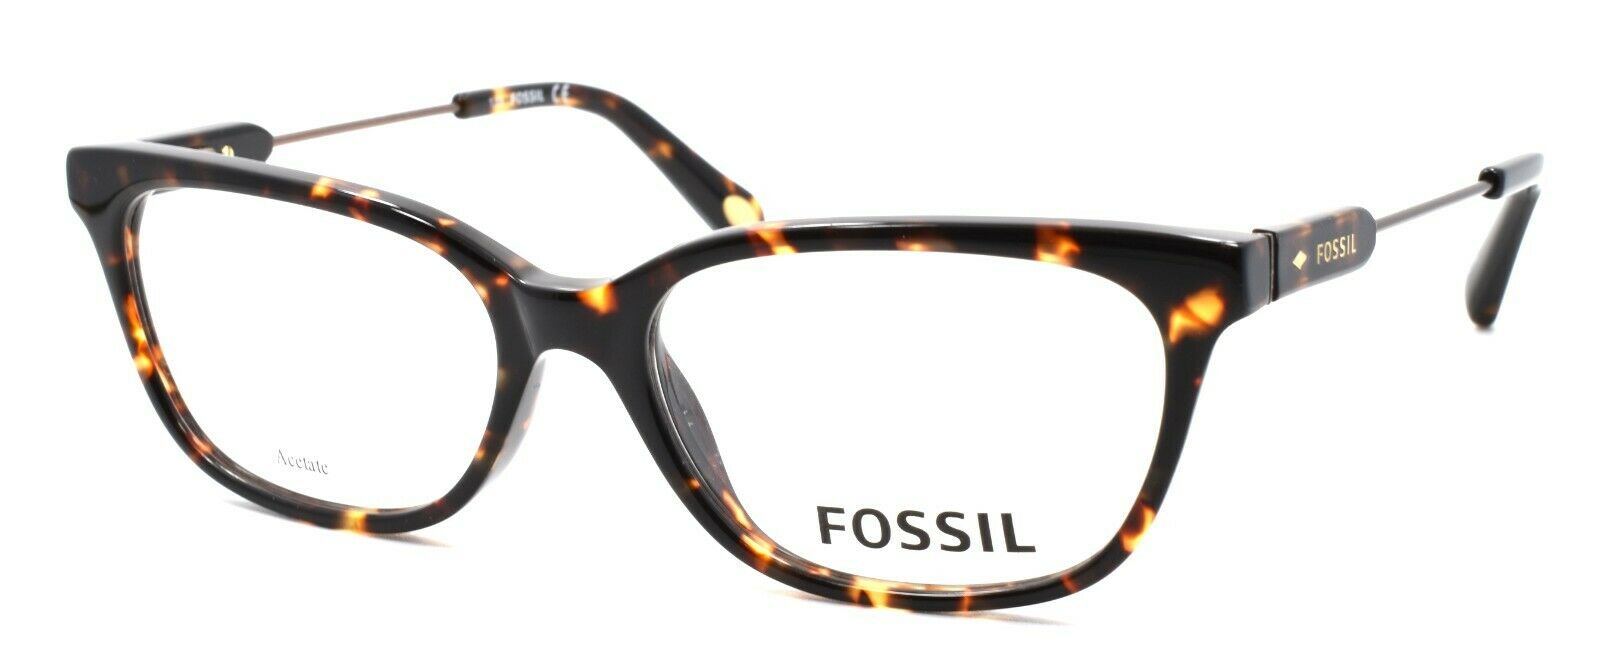 1-Fossil FOS 6077 RWY Women's Eyeglasses Frames 52-16-135 Havana + CASE-827886359462-IKSpecs